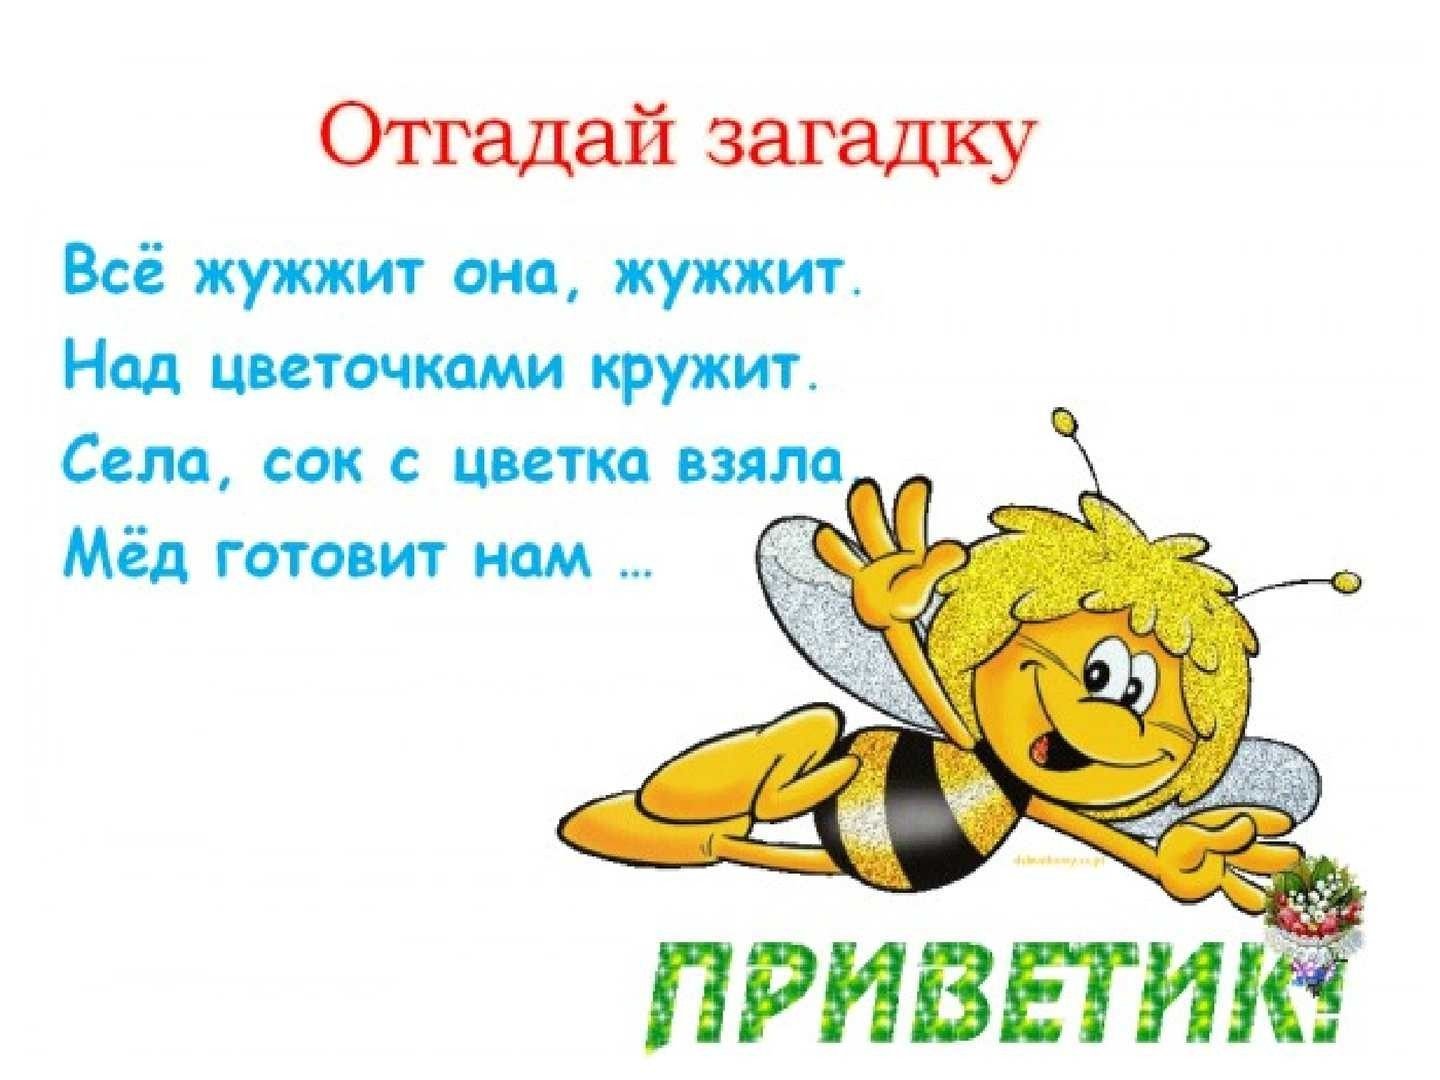 Большое жужжание. Загадка про пчелу. Загадка про пчелу для детей. Стих про пчелу. Детские загадки про пчел.